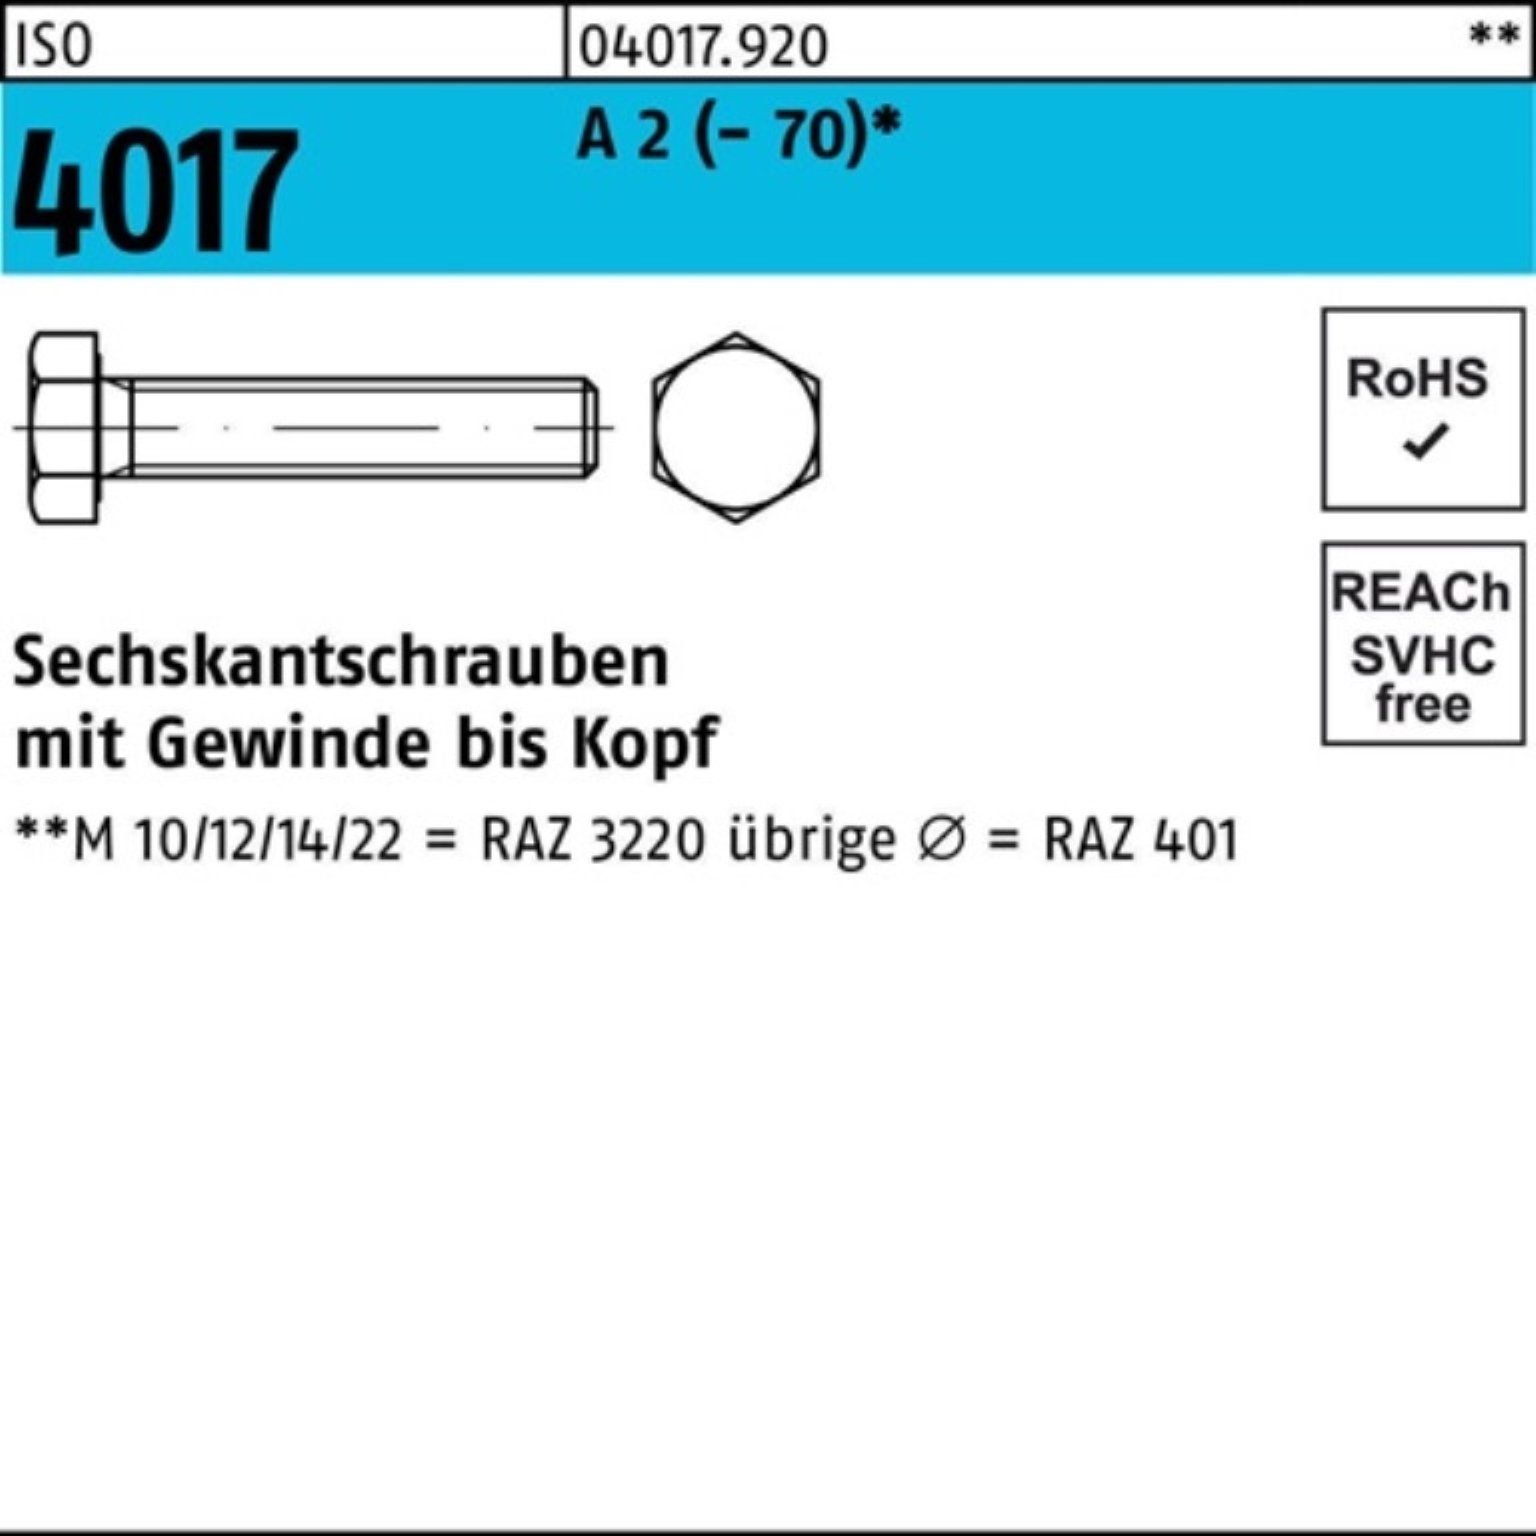 Bufab Sechskantschraube 100er Pack Sechskantschraube ISO 4017 VG M18x 45 A 2 (70) 25 Stück